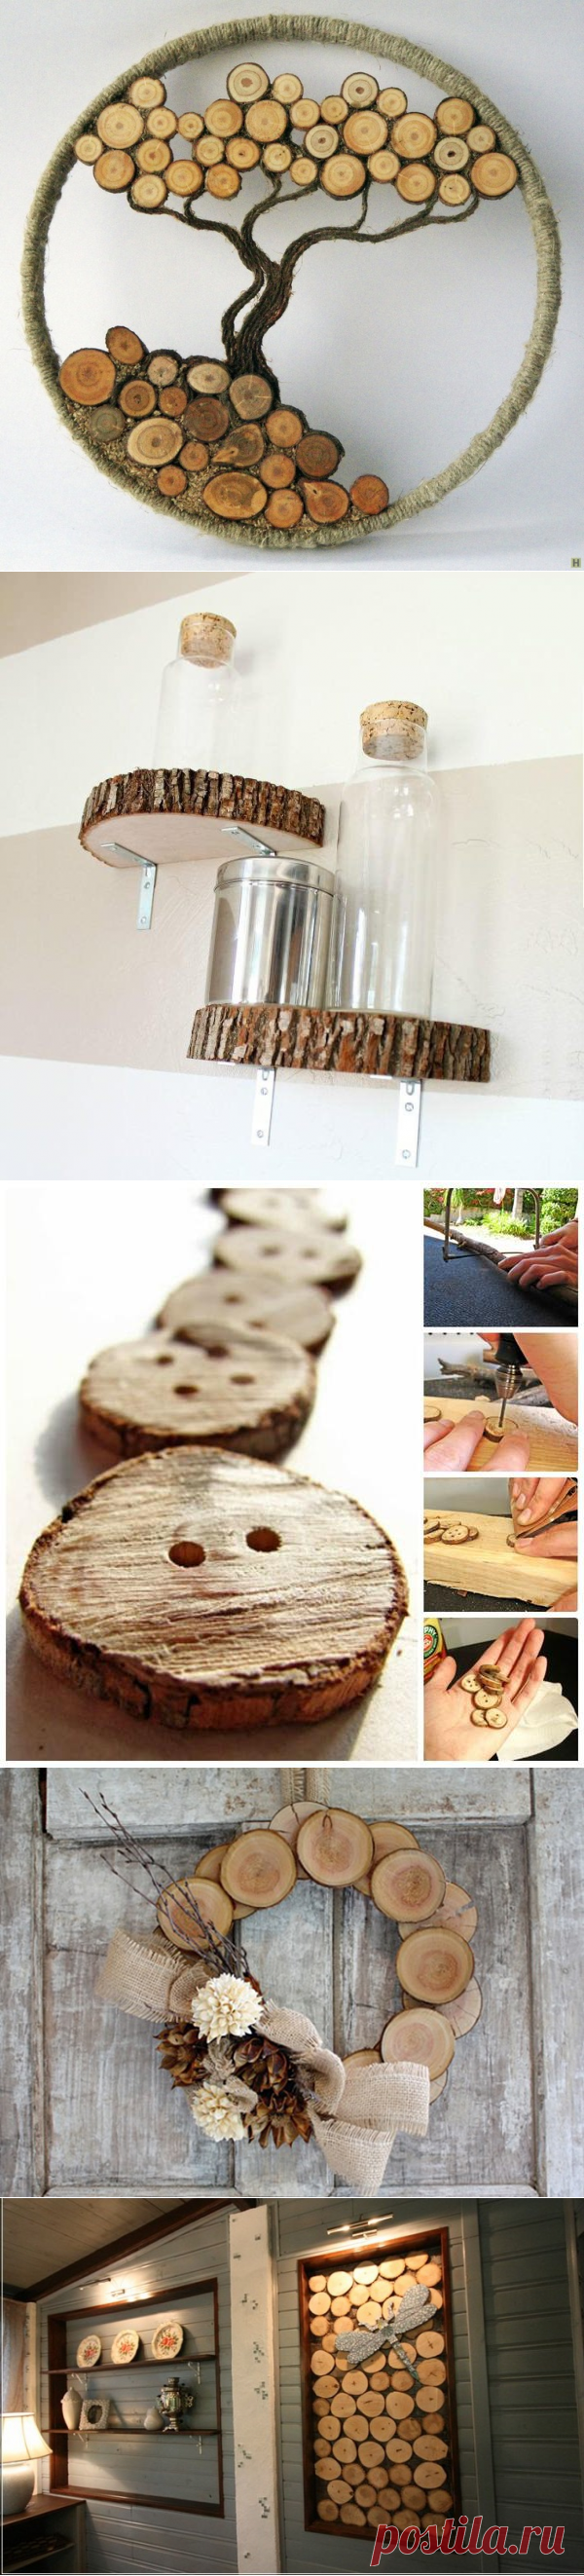 1000 и 1 деревяшка: идеи применения спилов дерева - Ярмарка Мастеров - ручная работа, handmade